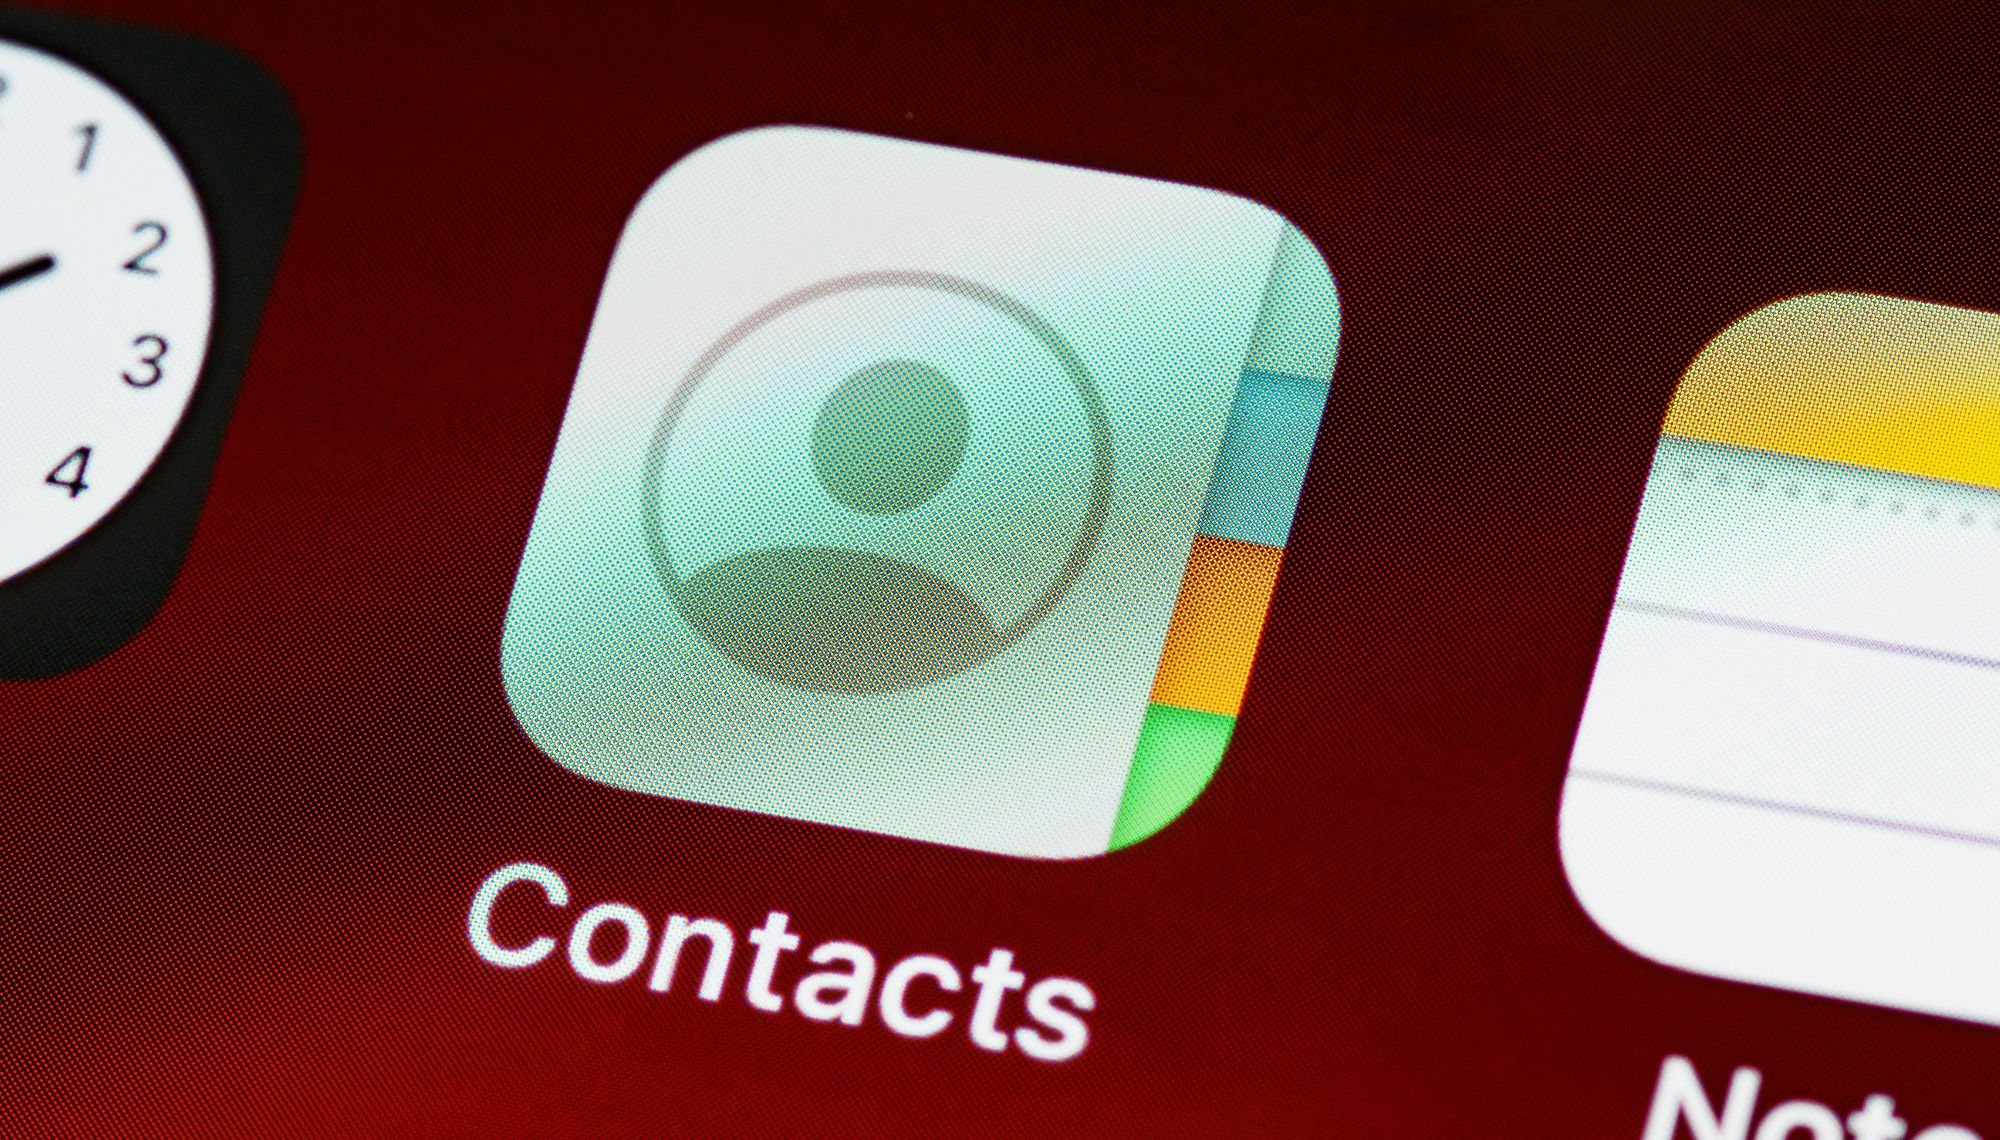 foto close up ikon aplikasi kontak di iphone